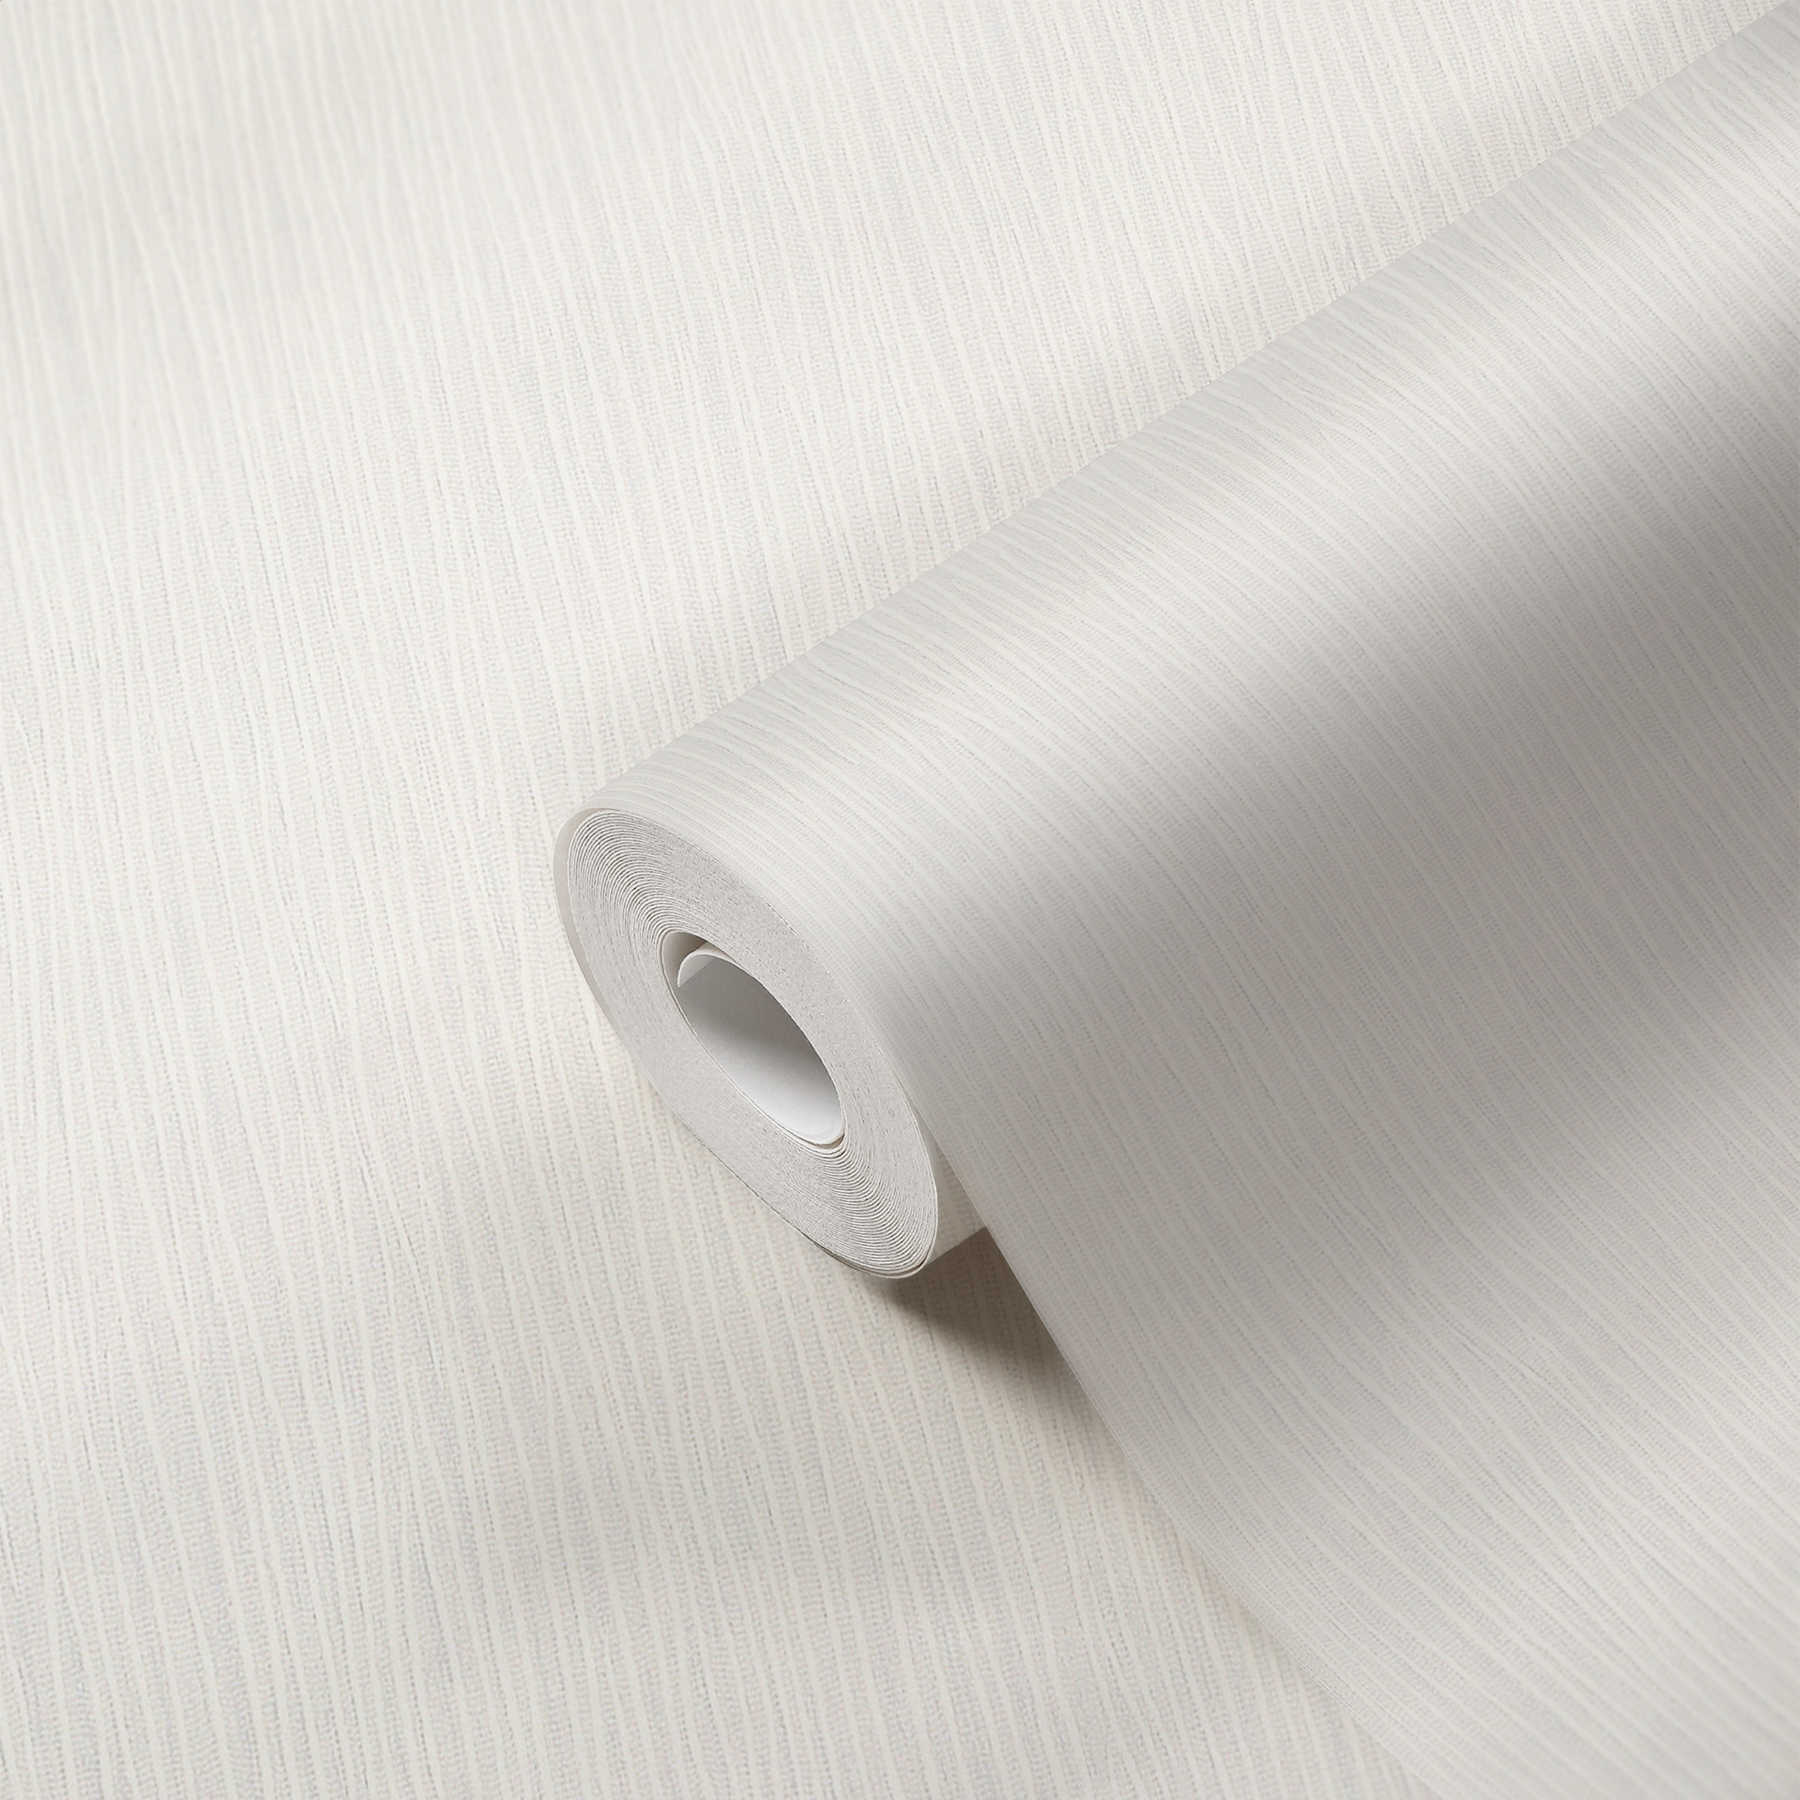             Papiertapete Weiß mit Linienstruktur
        